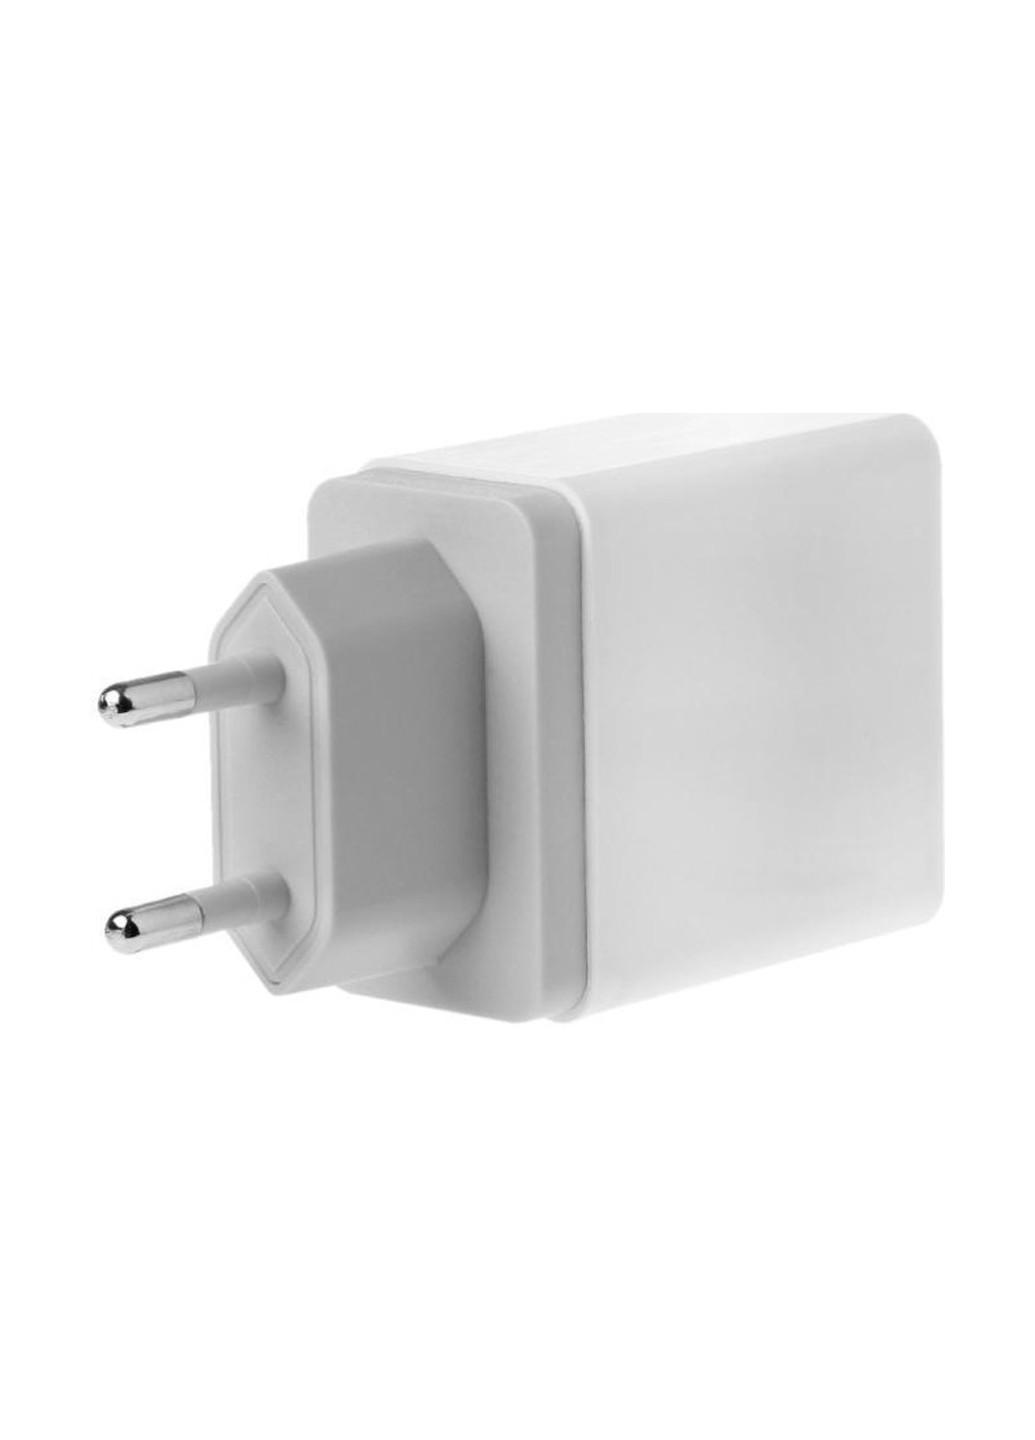 Сетевое зарядное устройство 3 USB, 3A White XoKo wc-310 (132504977)